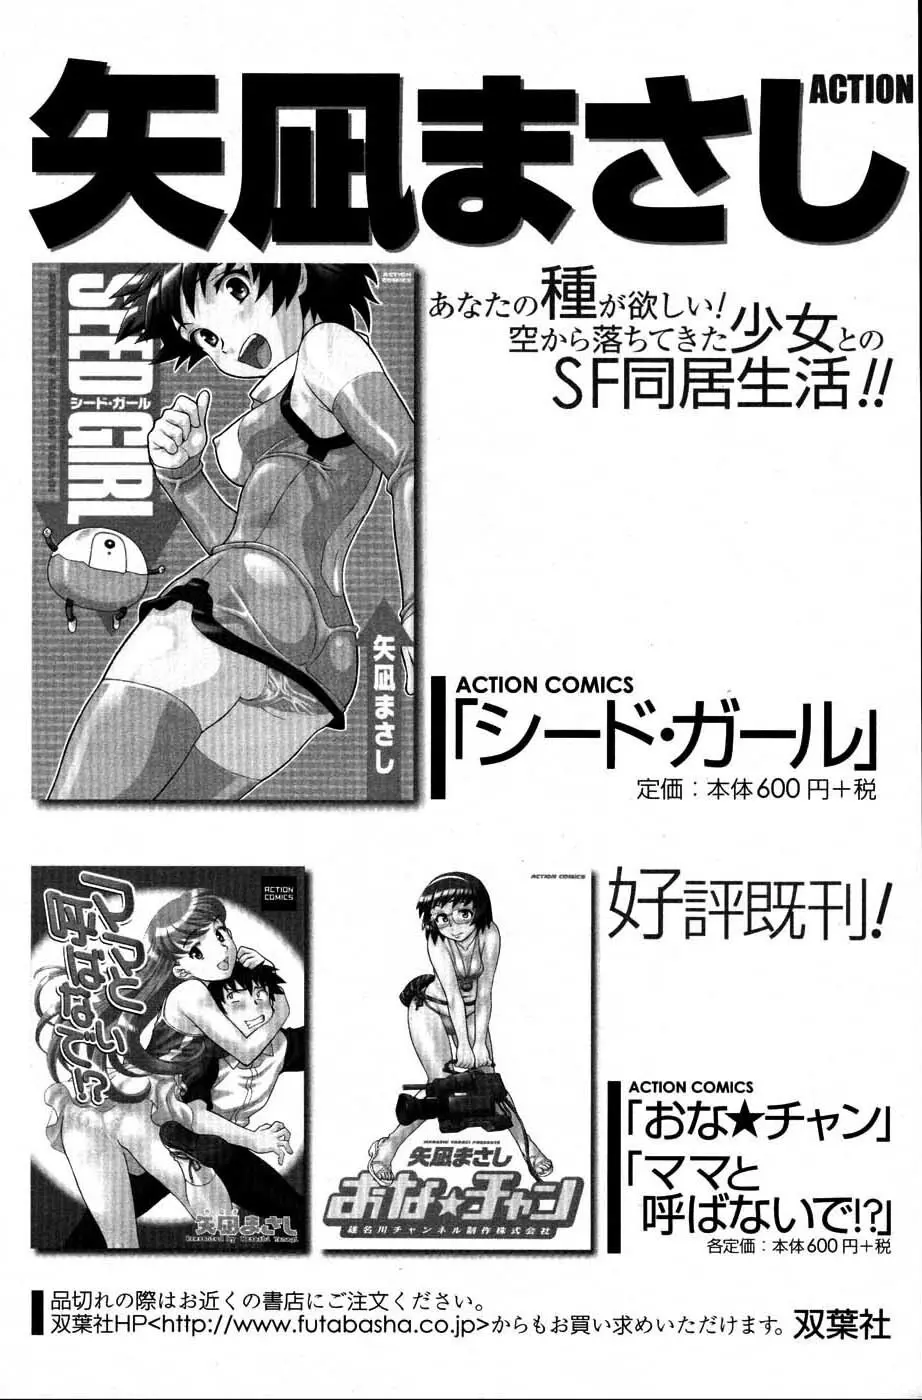 メンズヤングスペシャルIKAZUCHI雷 Vol.3 2007年9月号増刊 118ページ